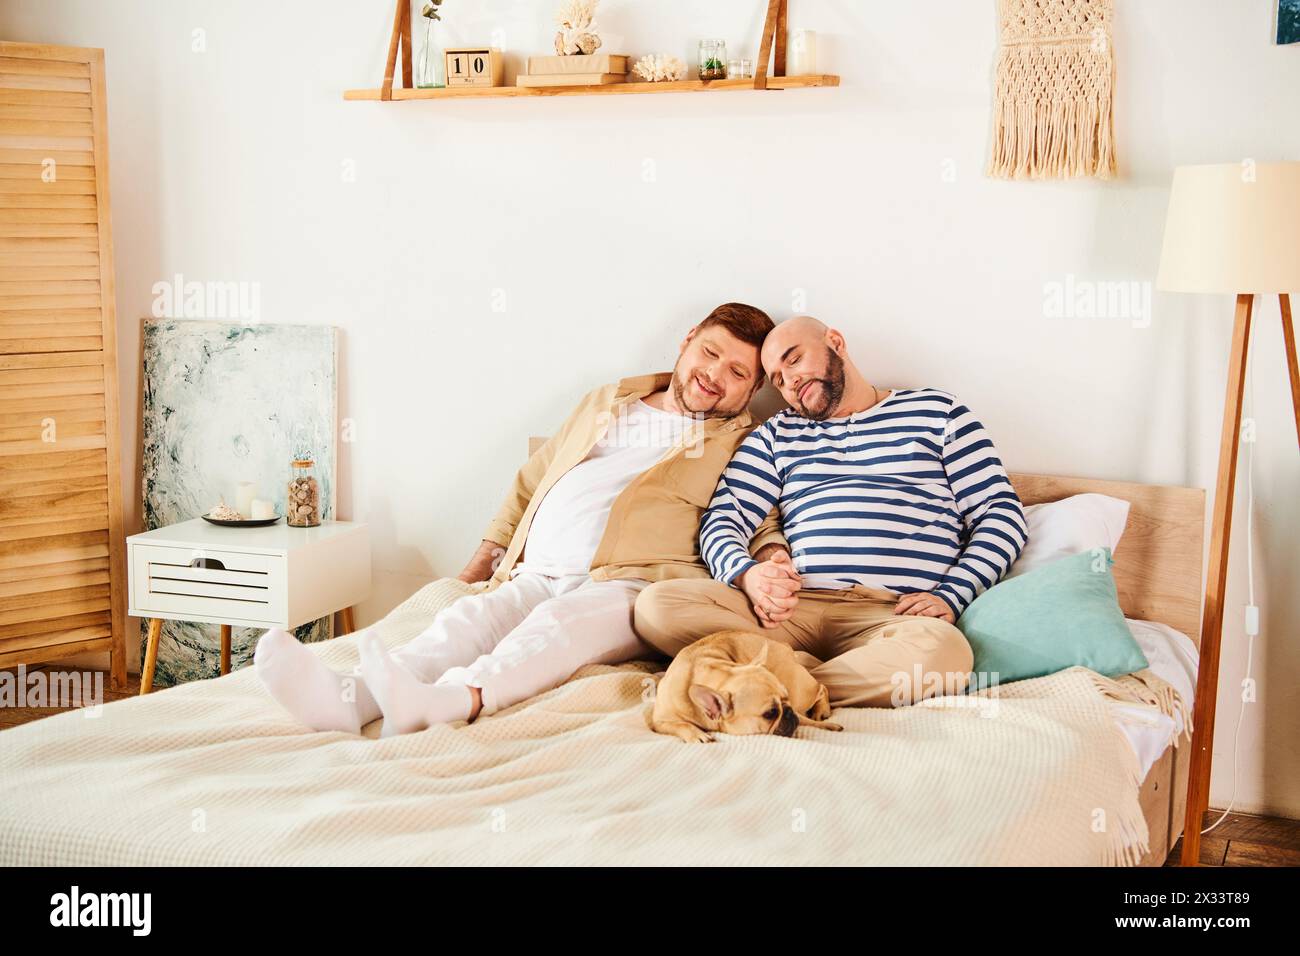 Ein schwules Paar, neben ihrer französischen Bulldogge, die auf einem Bett liegt. Stockfoto